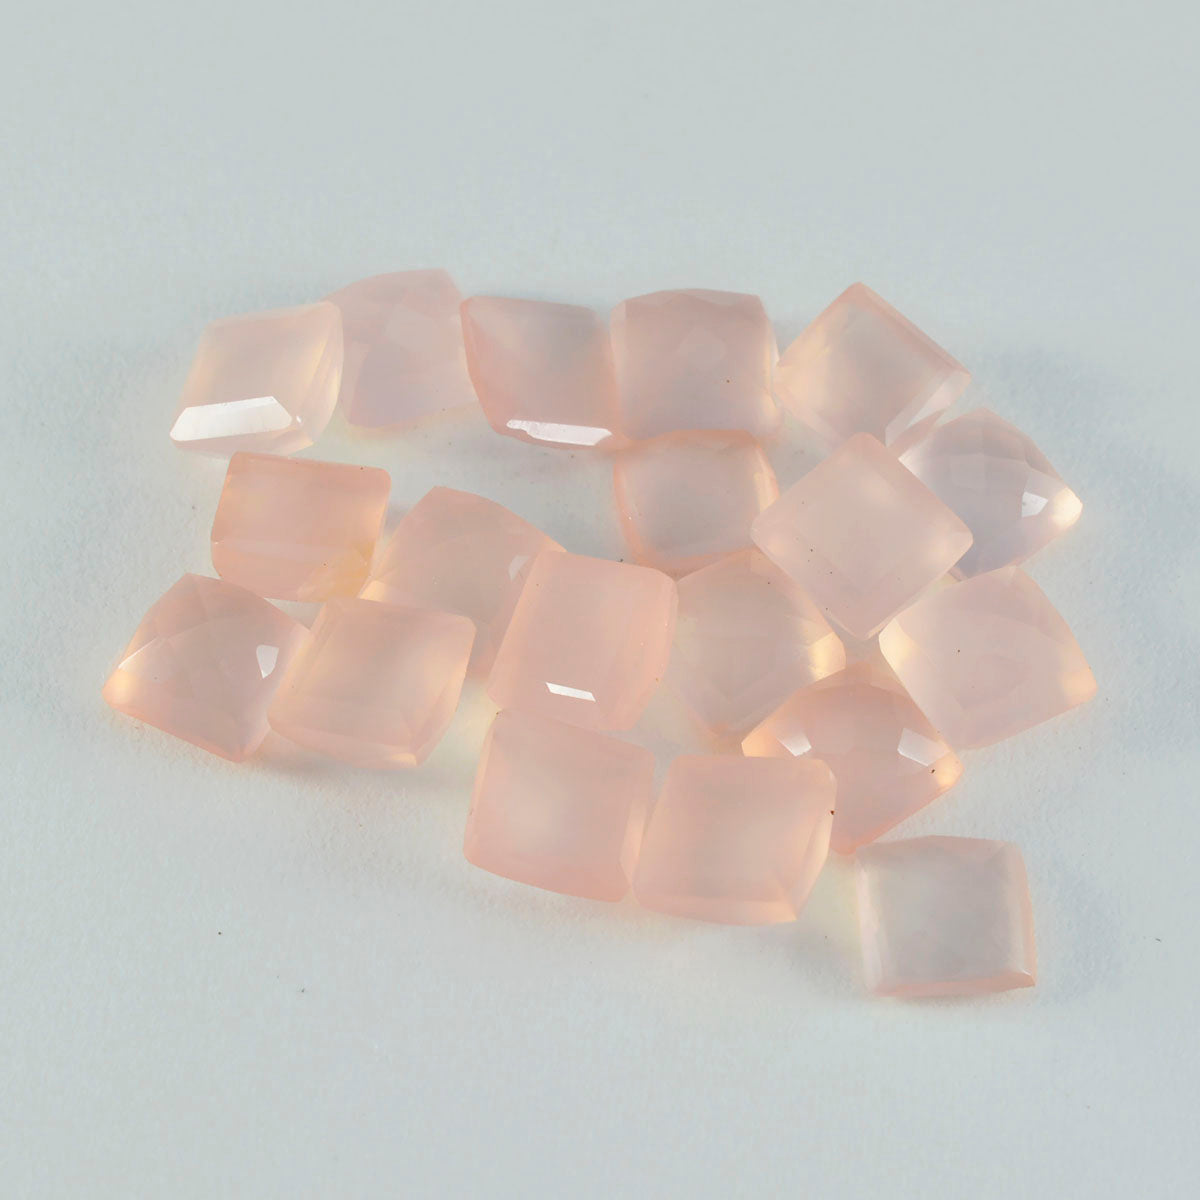 riyogems 1 шт. розовый кварц ограненный 6x6 мм квадратной формы прекрасный качественный драгоценный камень